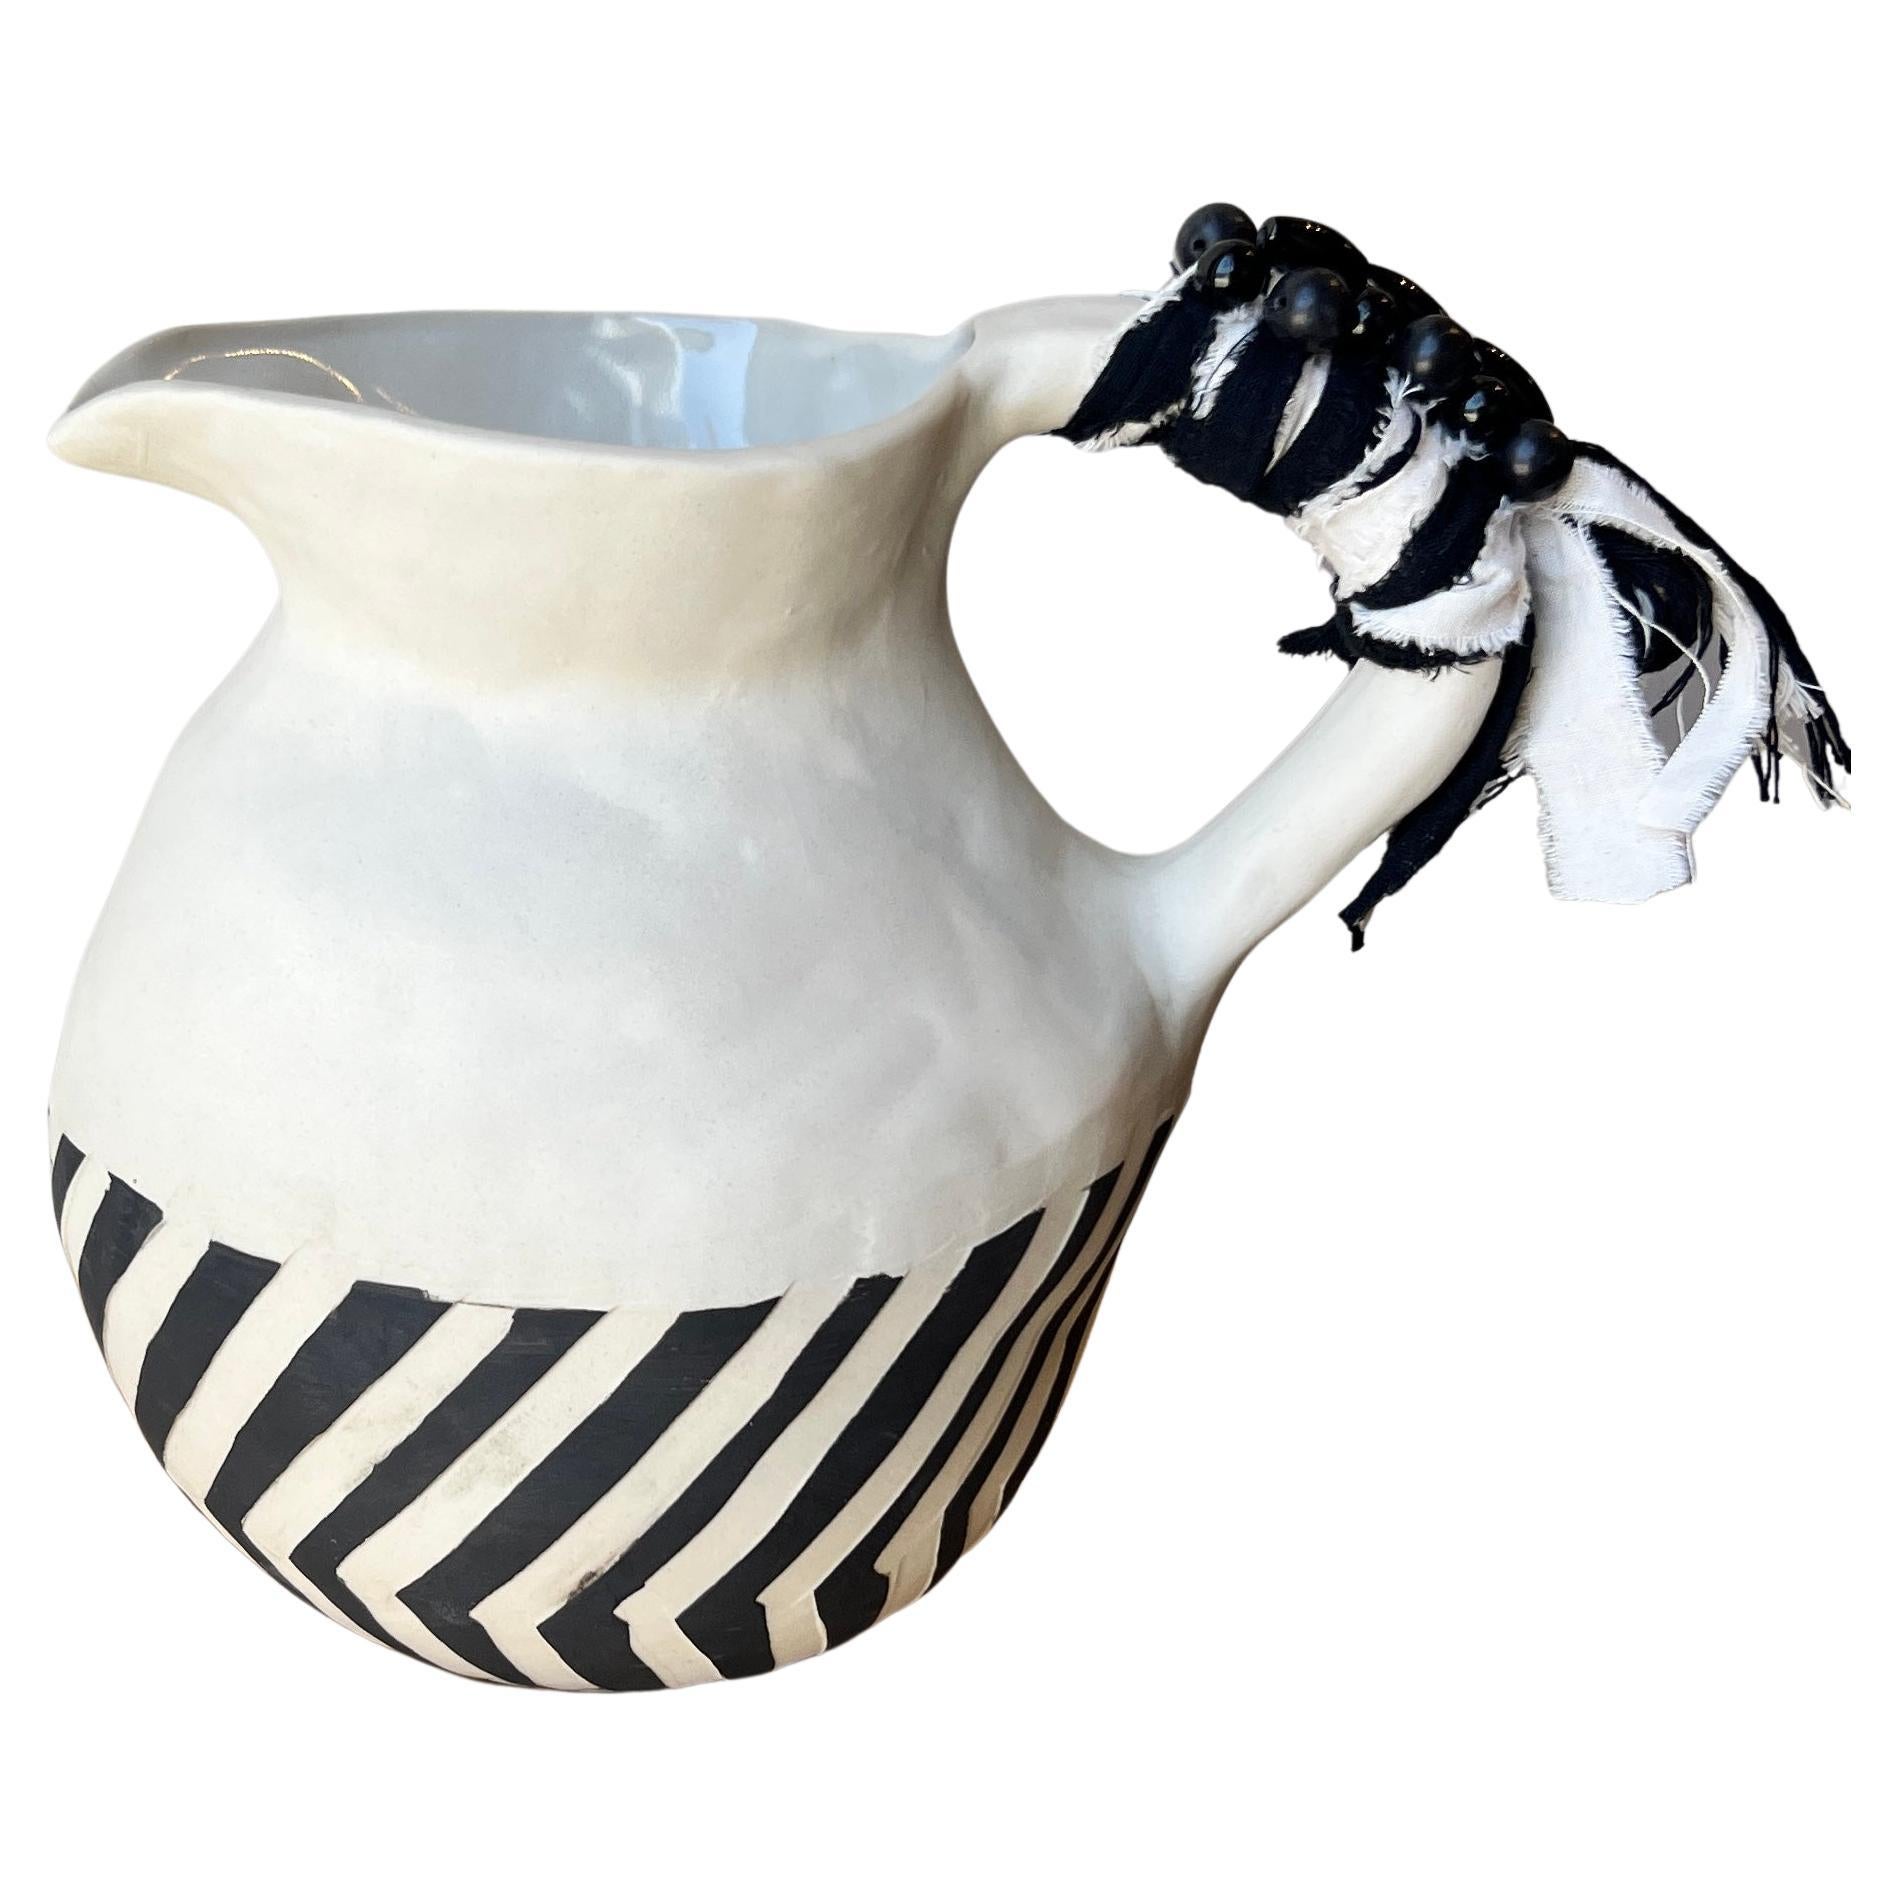 Cruche en céramique rayée et fantaisiste faite à la main en noir et blanc avec du tissu et des perles